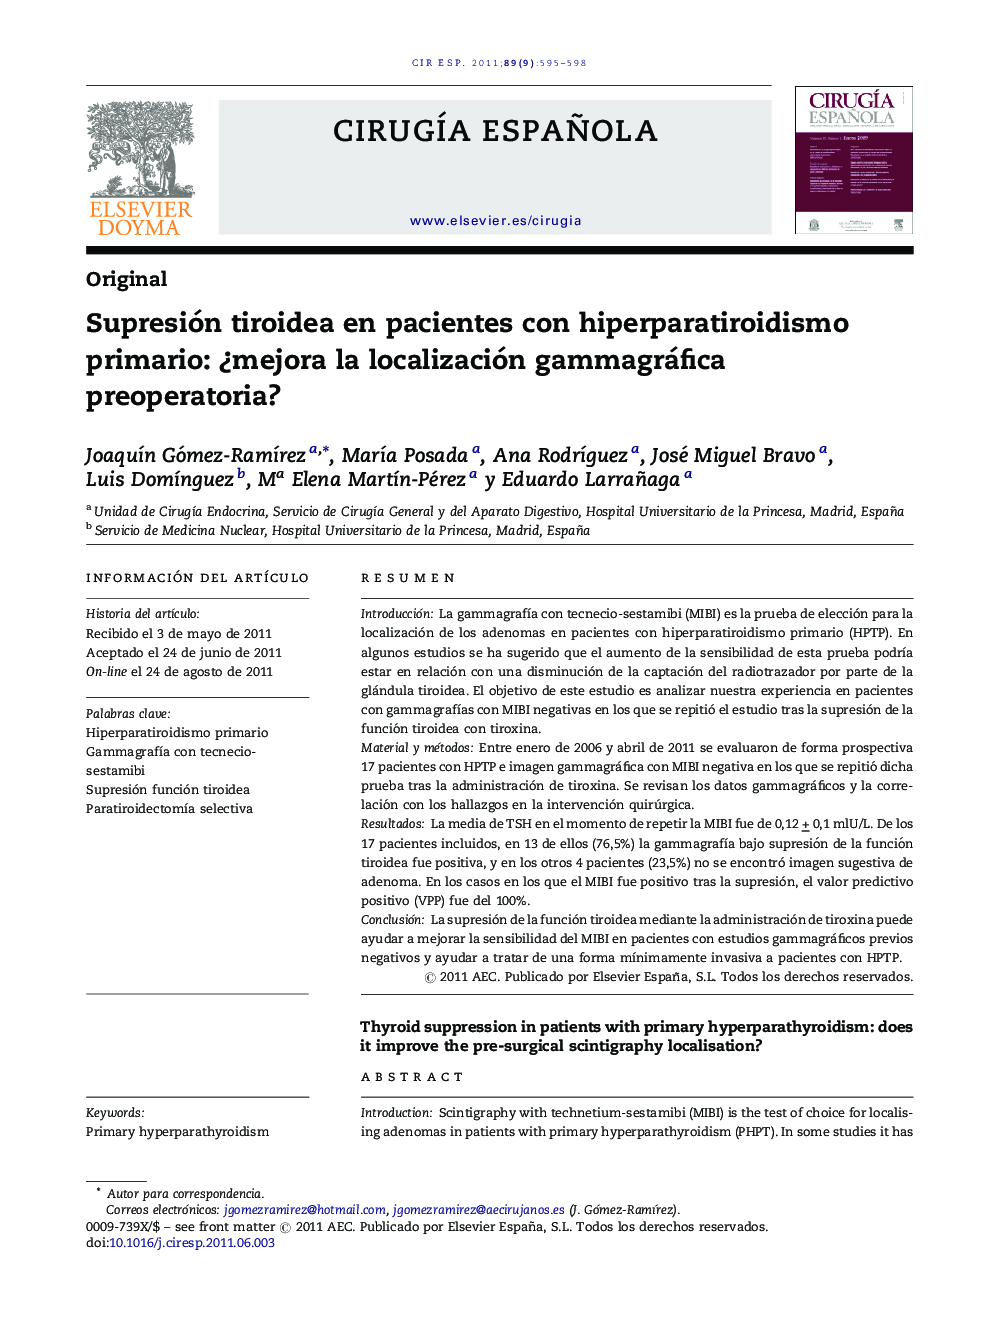 Supresión tiroidea en pacientes con hiperparatiroidismo primario: Â¿mejora la localización gammagráfica preoperatoria?